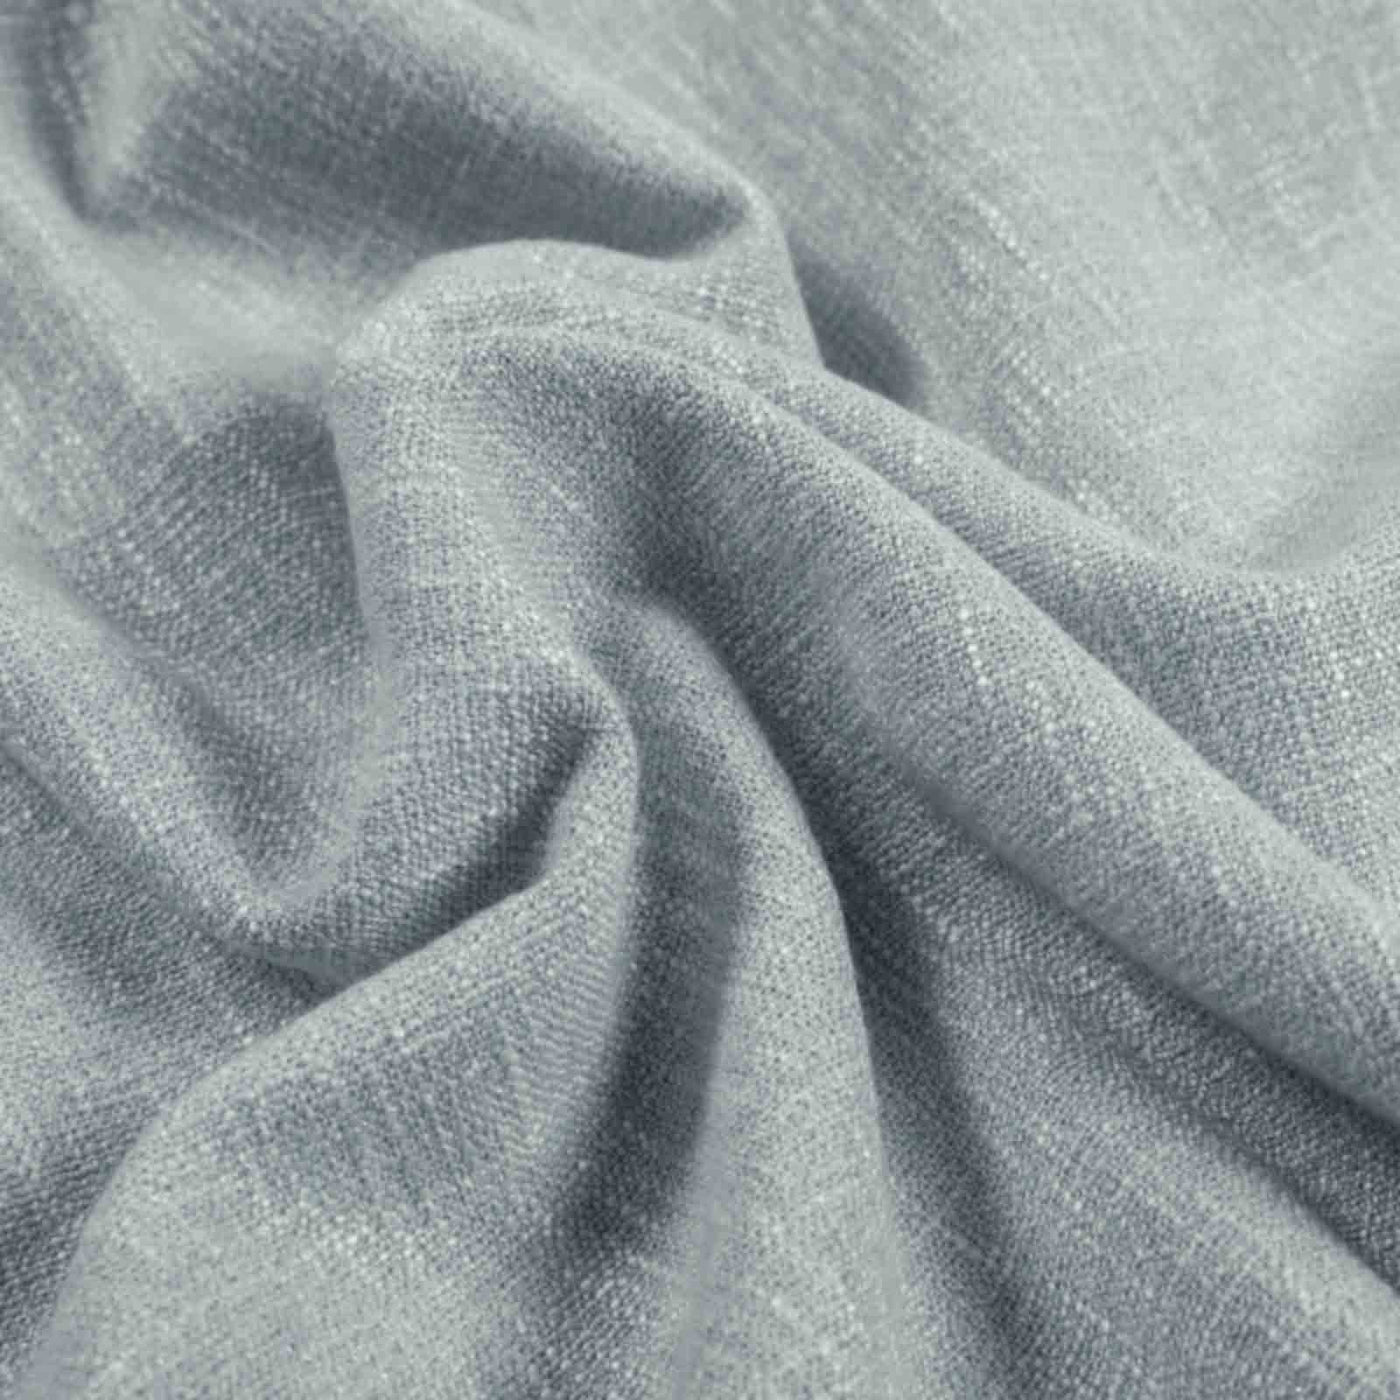 Sarai Textured Polyester Cotton Curtain Pleated